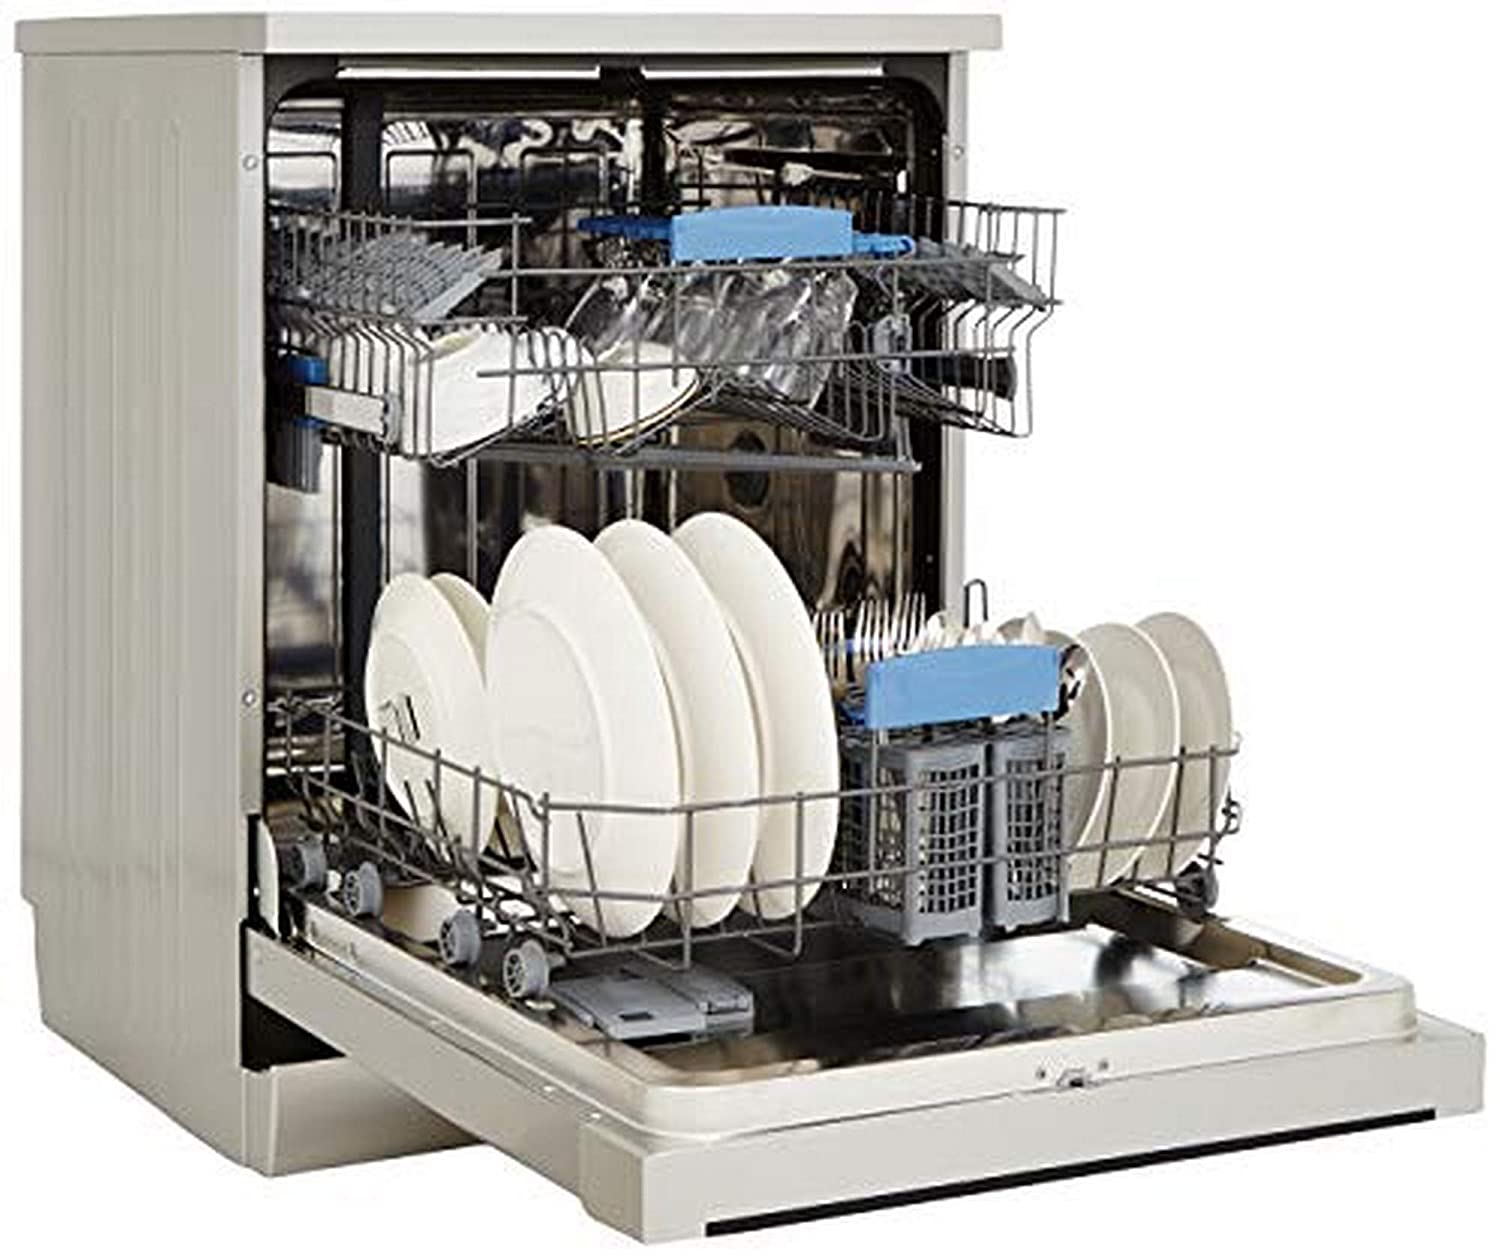 IFB Neptune VX Fully Electronic Dishwasher (12 Place Settings, Dark Silver) - Mahajan Electronics Online